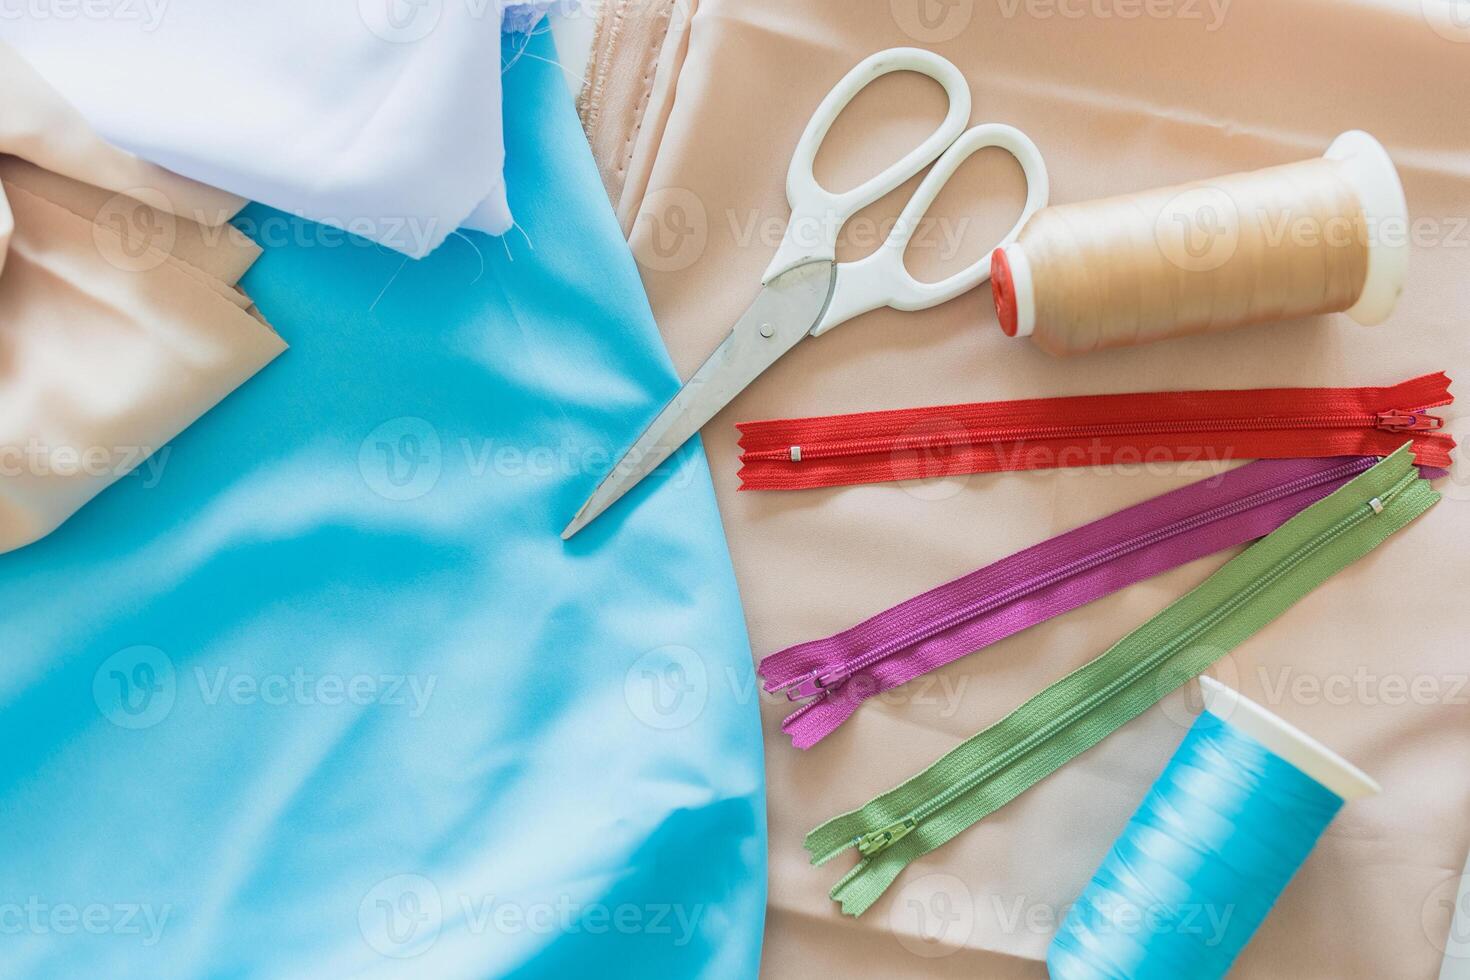 coloré fermetures éclair les ciseaux et bobines de fil allonger sur tissus textile tissu pour tailleur équipement décoration concept photo